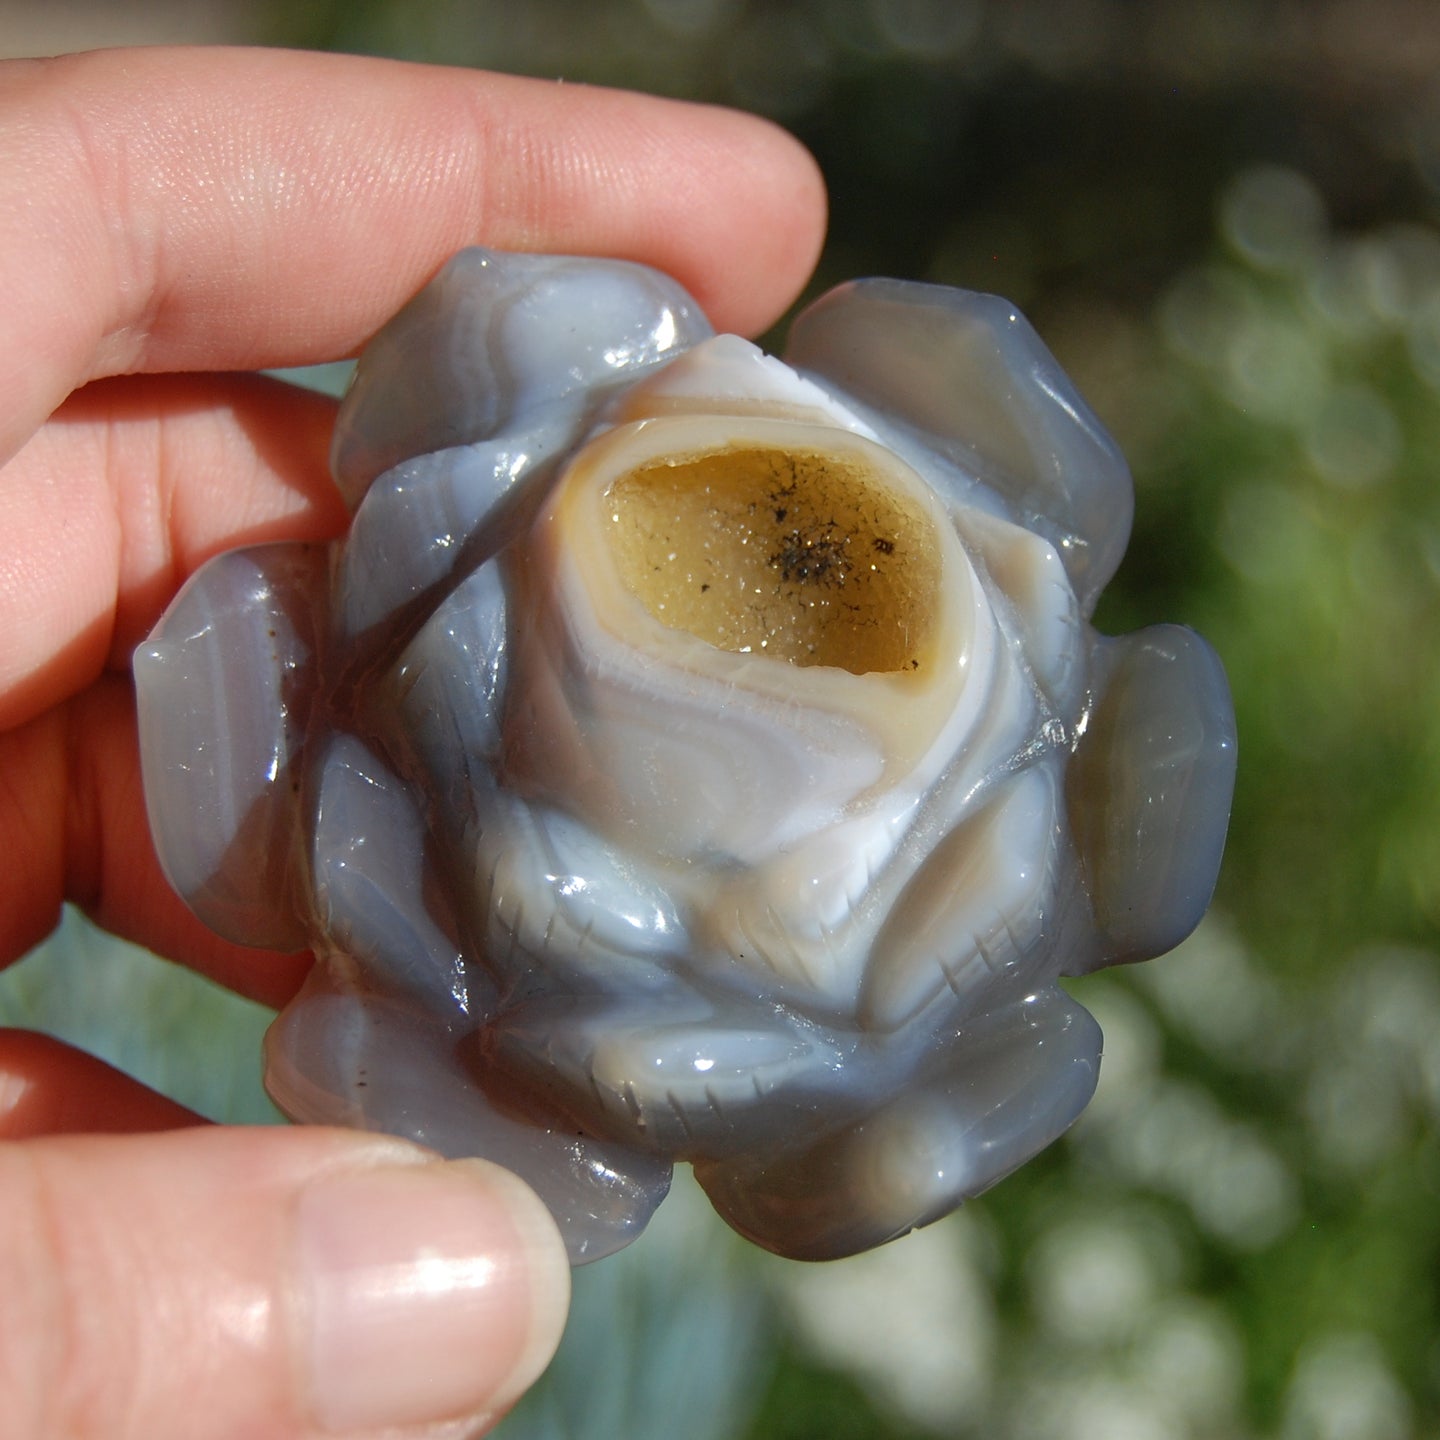 Agate Geode Lotus Flower